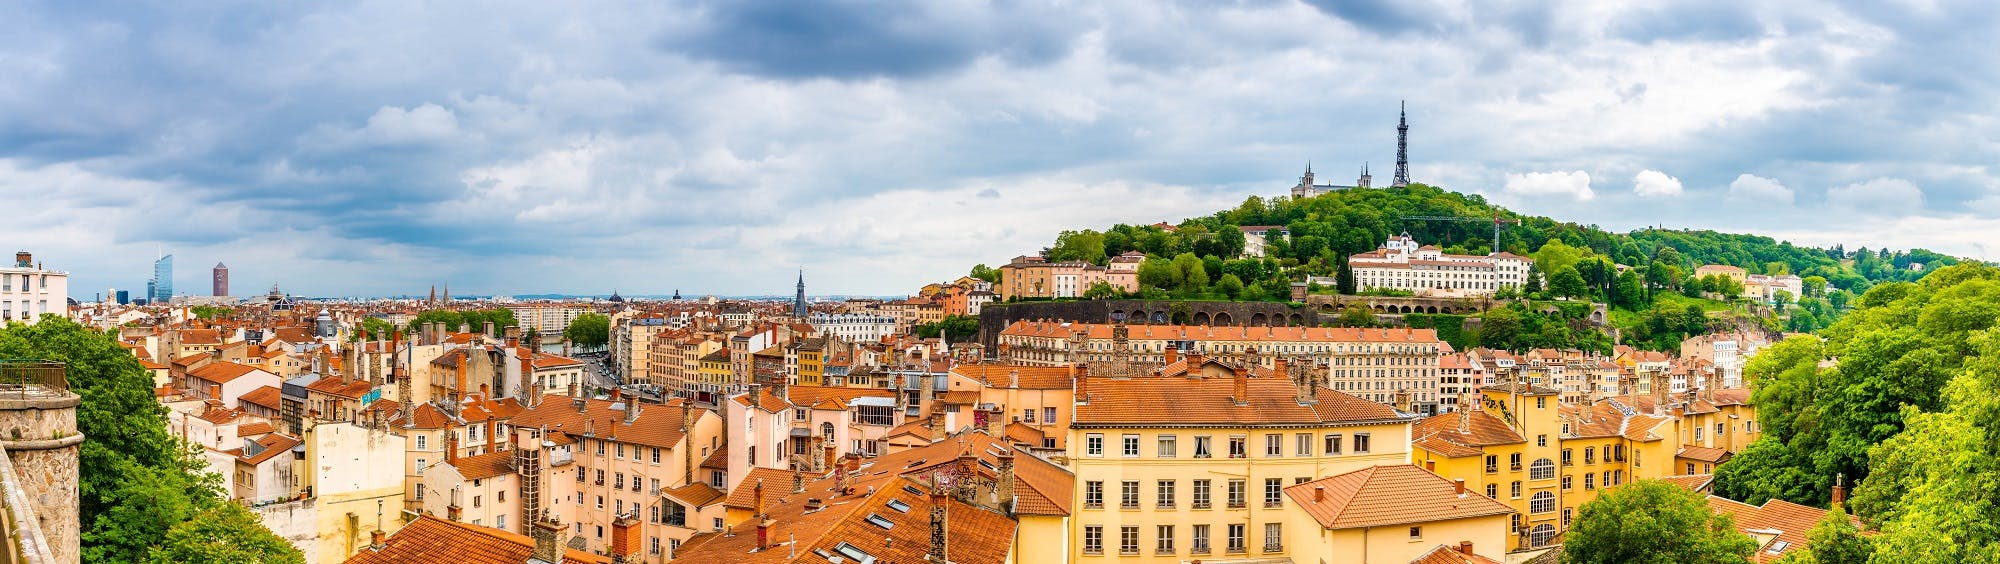 Panorama- und Stadtrundfahrt mit lokalem Restaurantessen in Lyon